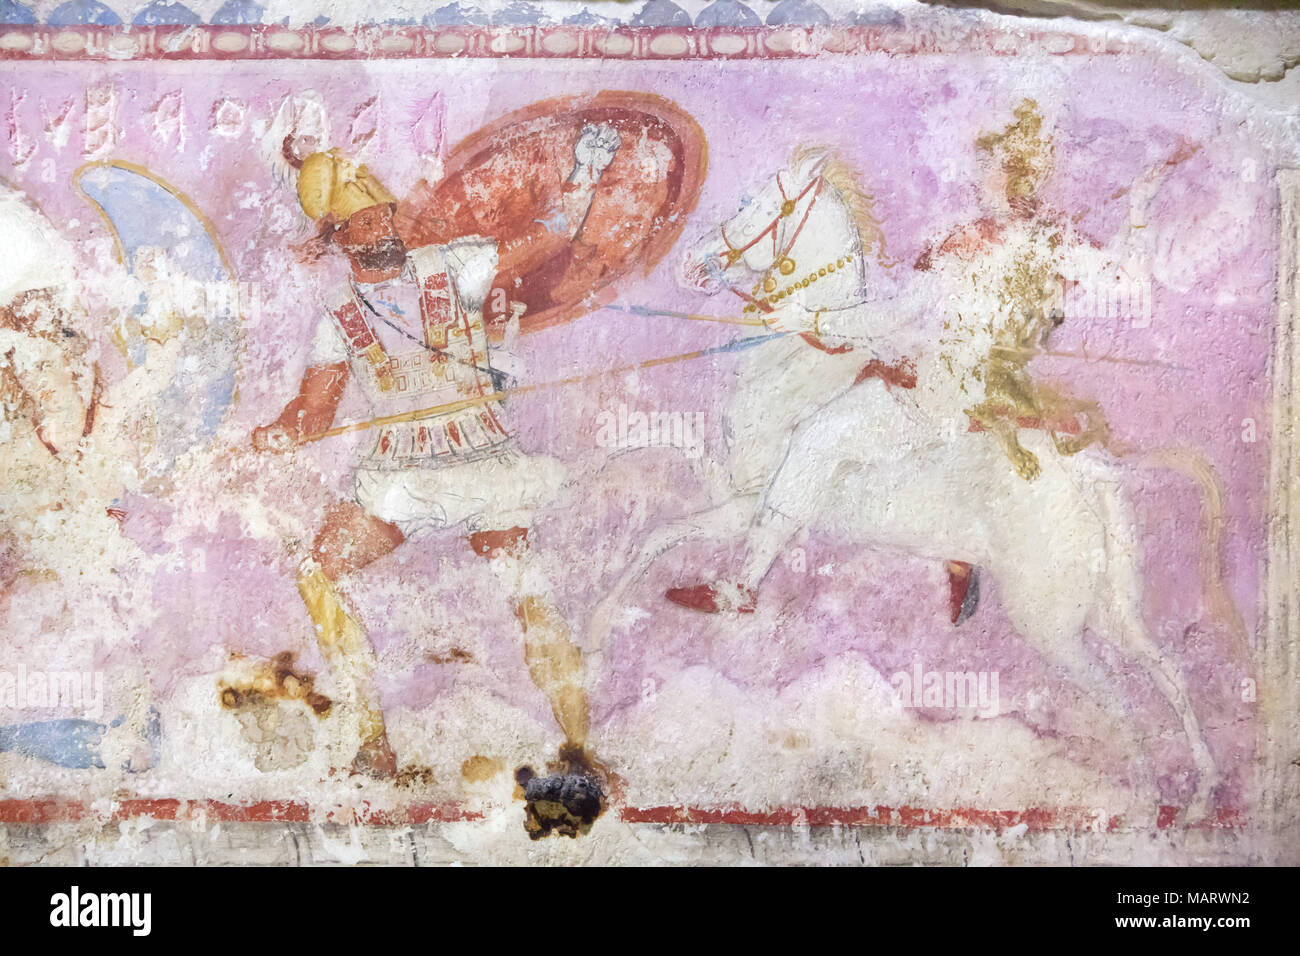 La batalla entre los griegos y las Amazonas. Pintura polícroma griego en el  sarcofago delle Amazzoni (Sarcófago de las Amazonas) datan del siglo IV  A.C. (350-325 A.C.) en exhibición en el Museo